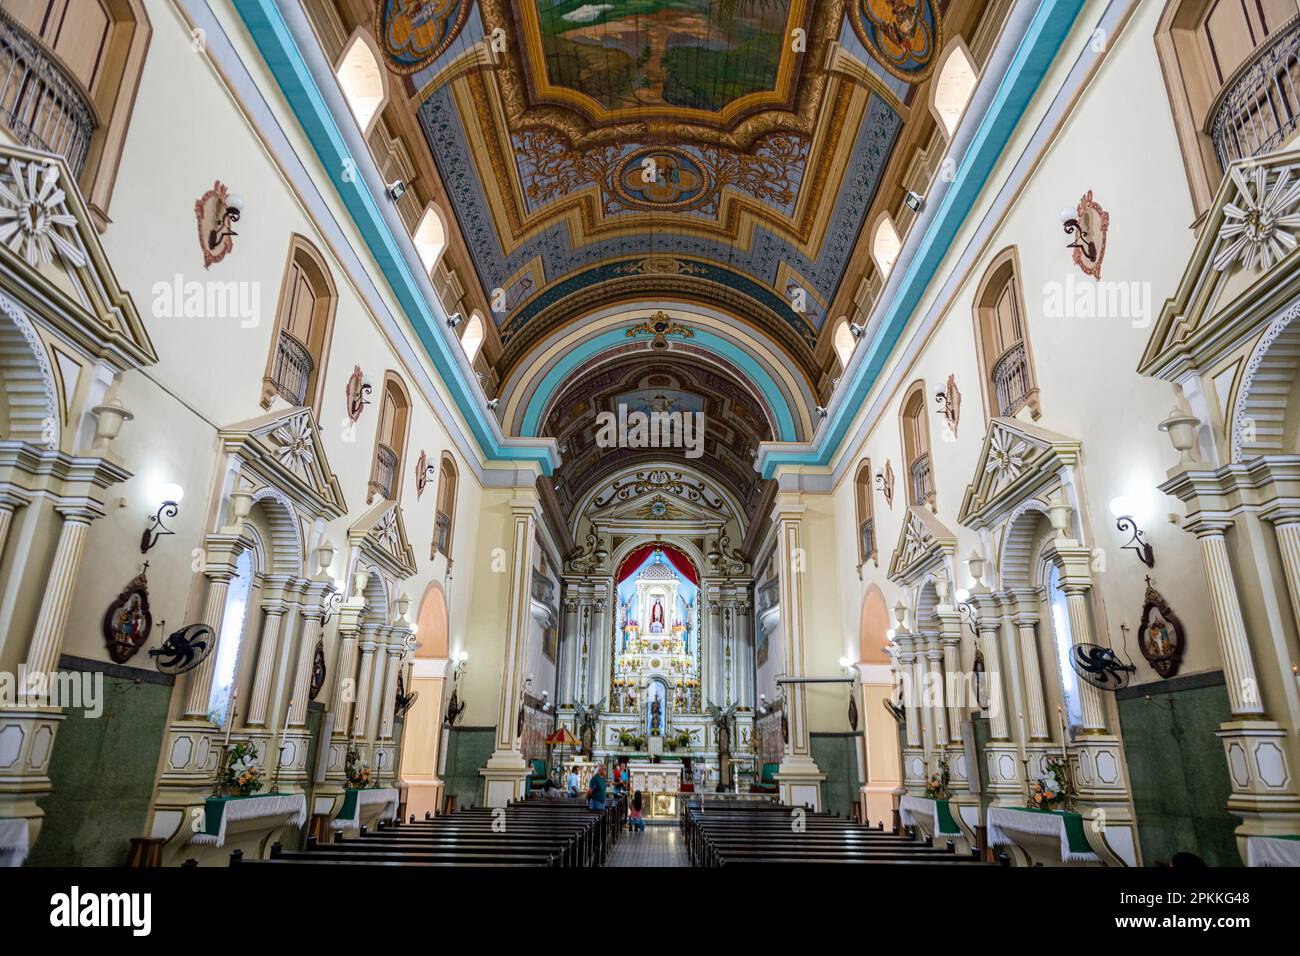 Basilica de Nossa Senhora das Neves e BOM Jesus de Iguape, Iguape, Etat de Sao Paulo, Brésil, Amérique du Sud Banque D'Images